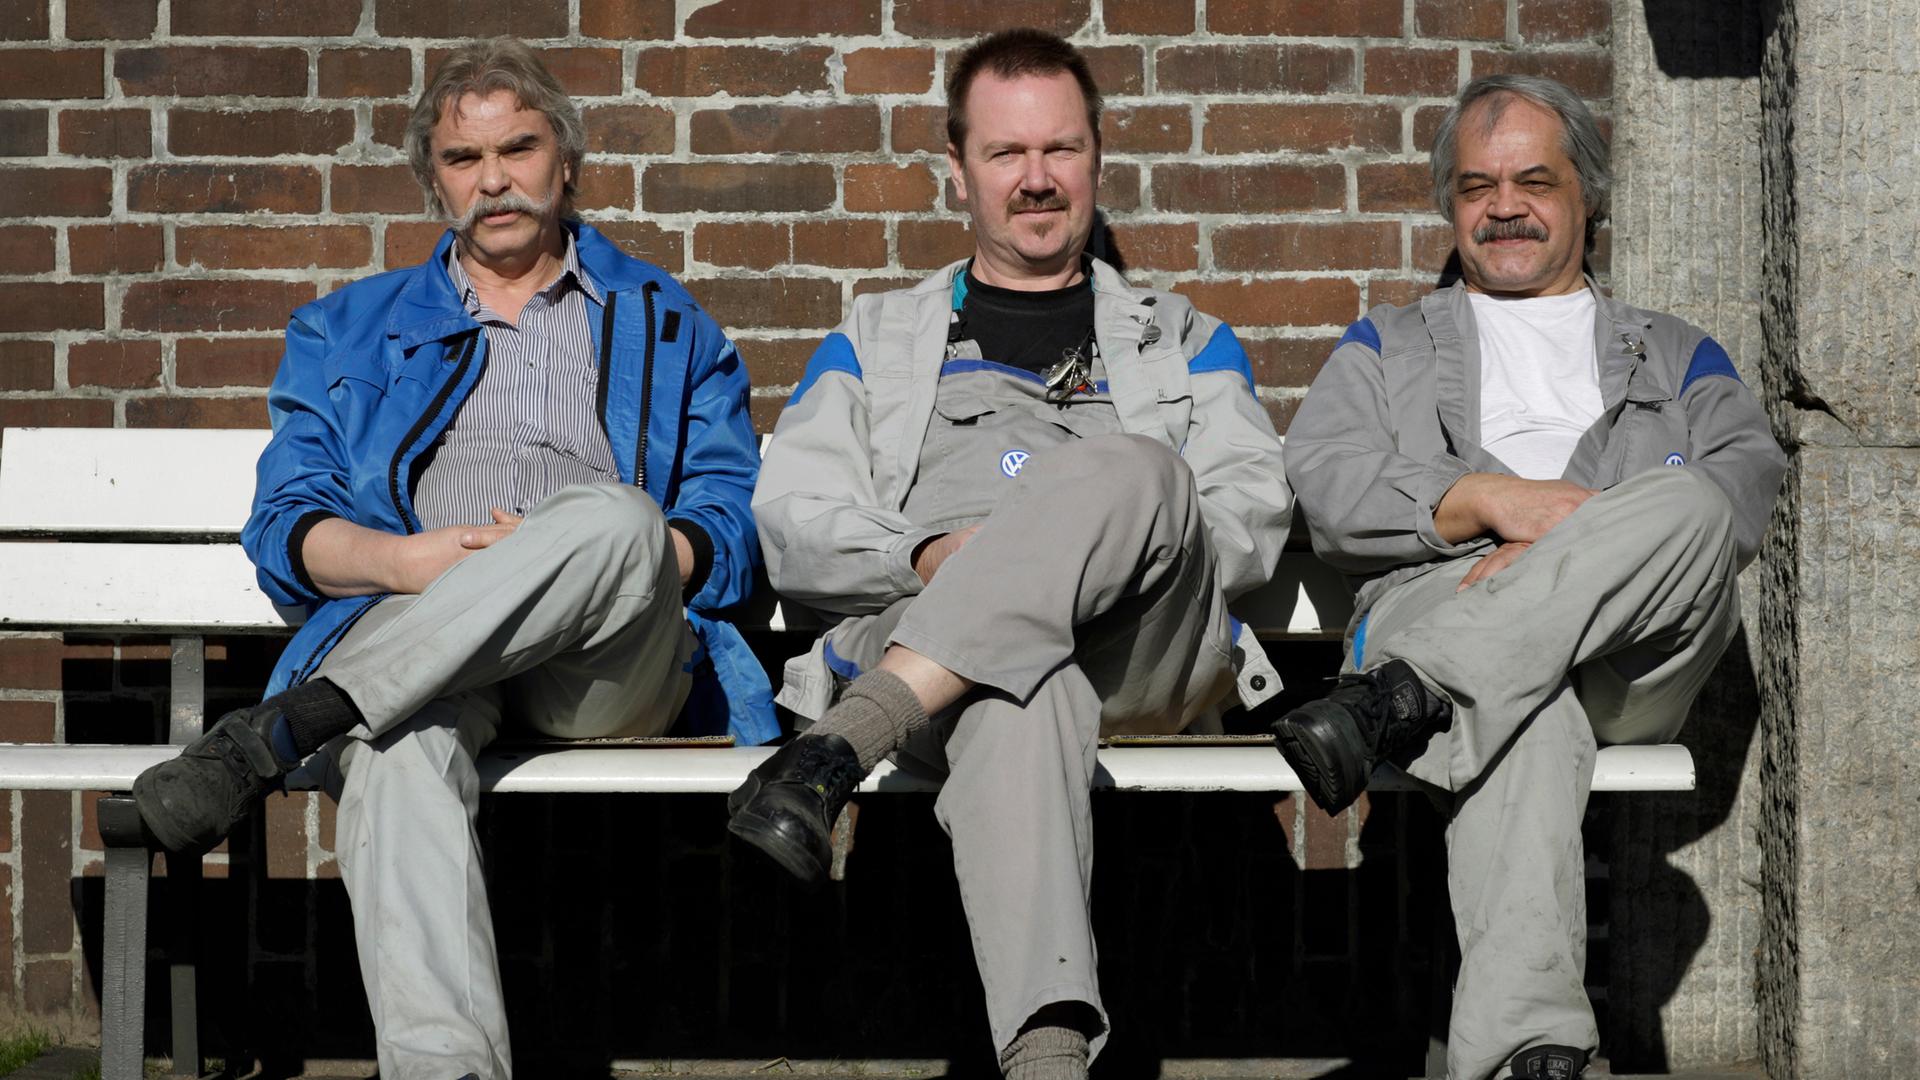 VW-Arbeiter bei der Pause: Drei Männer sitzen in Arbeitskleidung auf einer Bank, schlagen das rechte Bein über das linke und blicken in die Kamera.